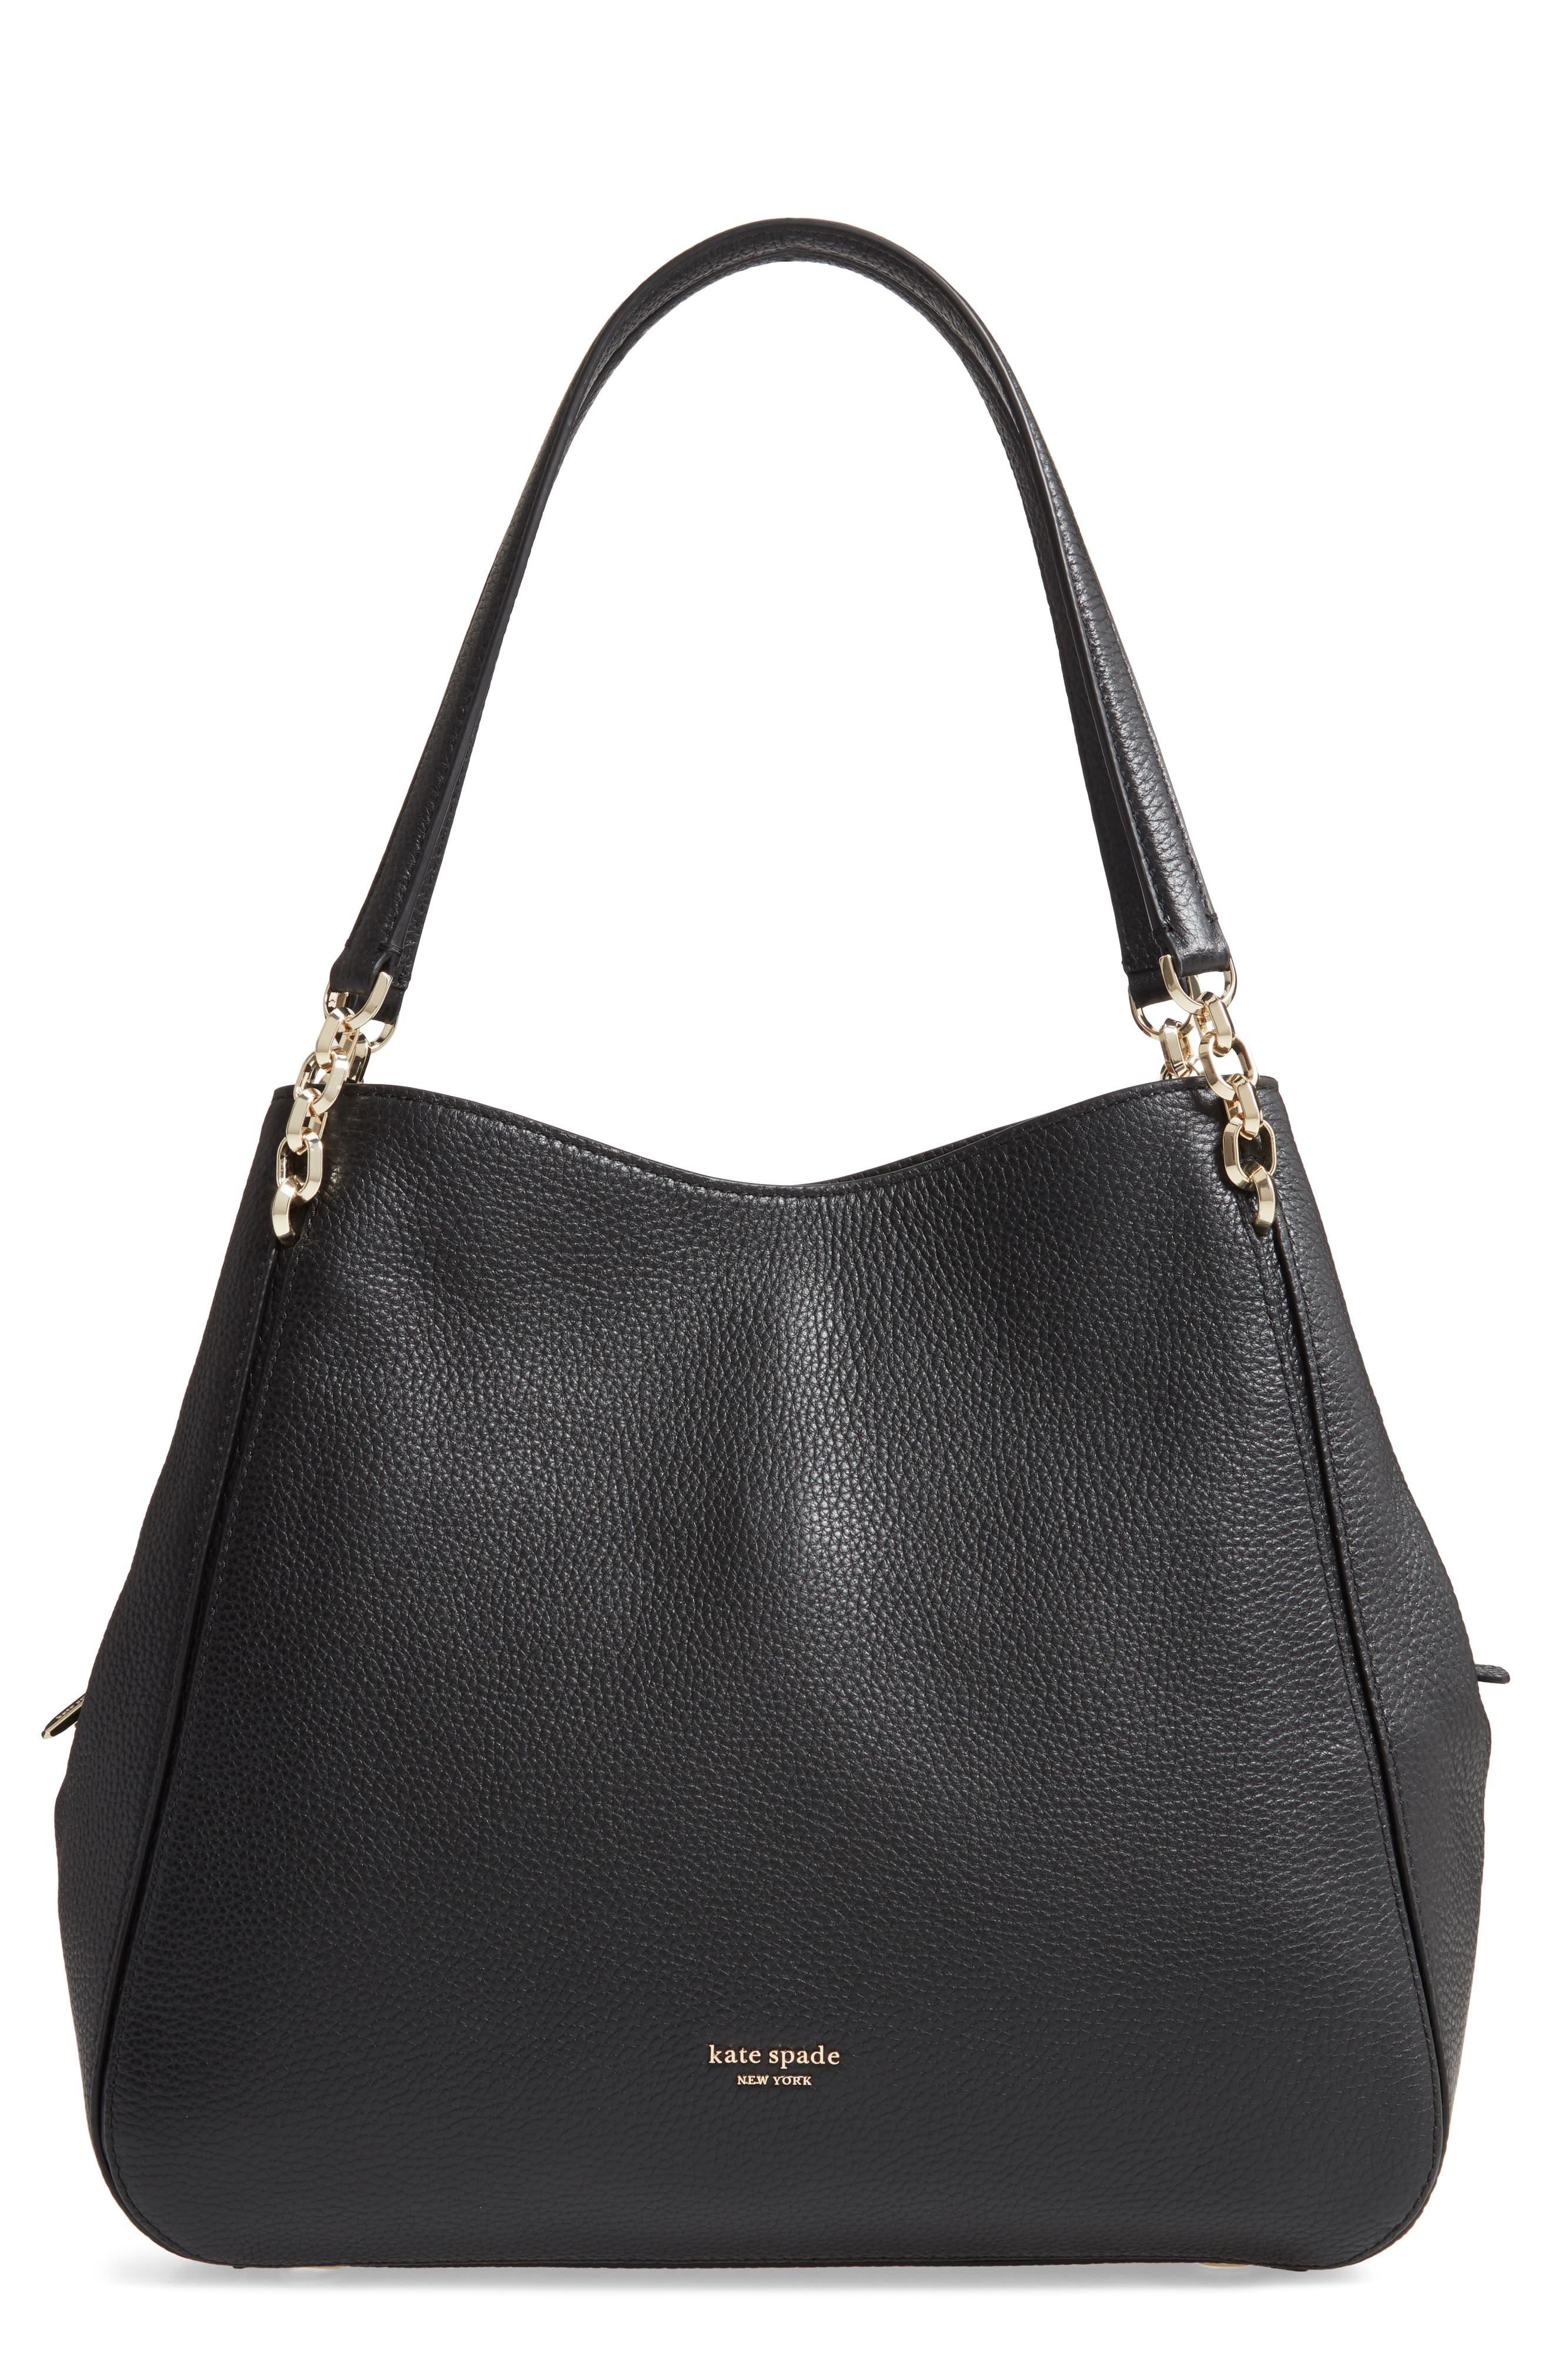 Kate Spade Large Hailey Leather Shoulder Bag in Black - Lyst